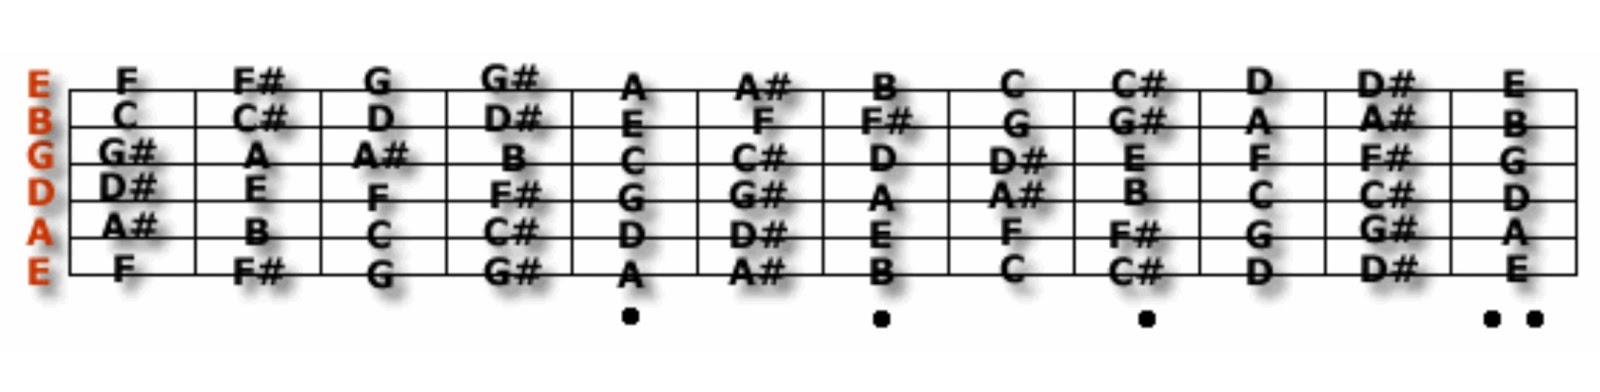 Басс аккорды. Расположение нот на грифе бас гитары 4 струны. Ноты на бас гитаре 4 струны. Ноты на грифе бас гитары 6 струн. Расположение нот на грифе бас гитары.